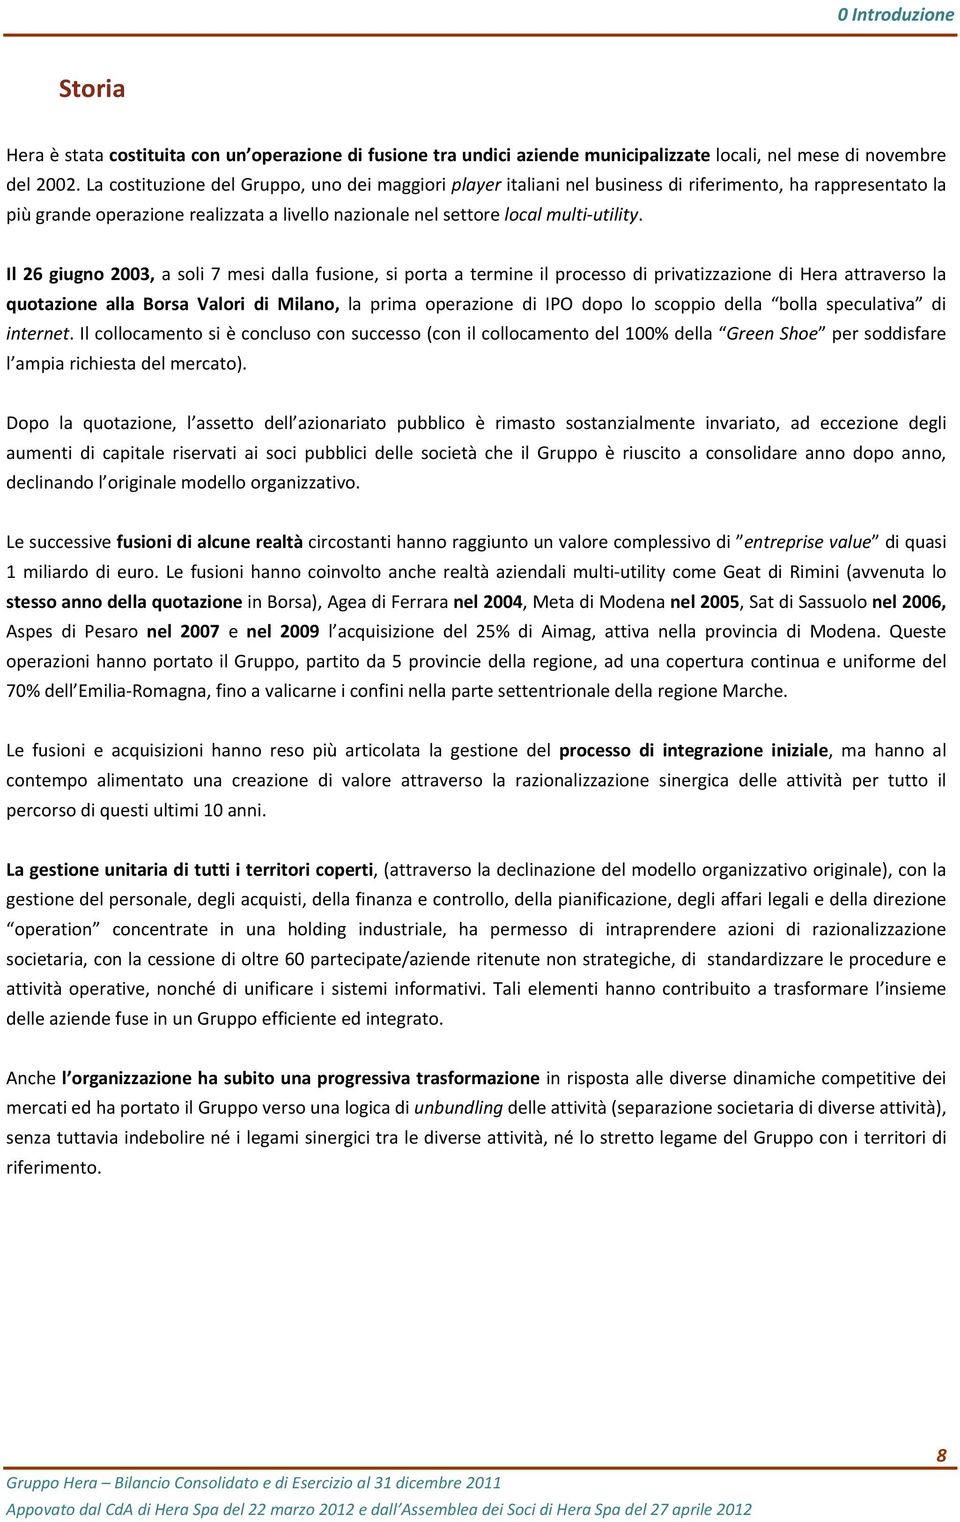 Il 26 giugno 2003, a soli 7 mesi dalla fusione, si porta a termine il processo di privatizzazione di Hera attraverso la quotazione alla Borsa Valori di Milano, la prima operazione di IPO dopo lo